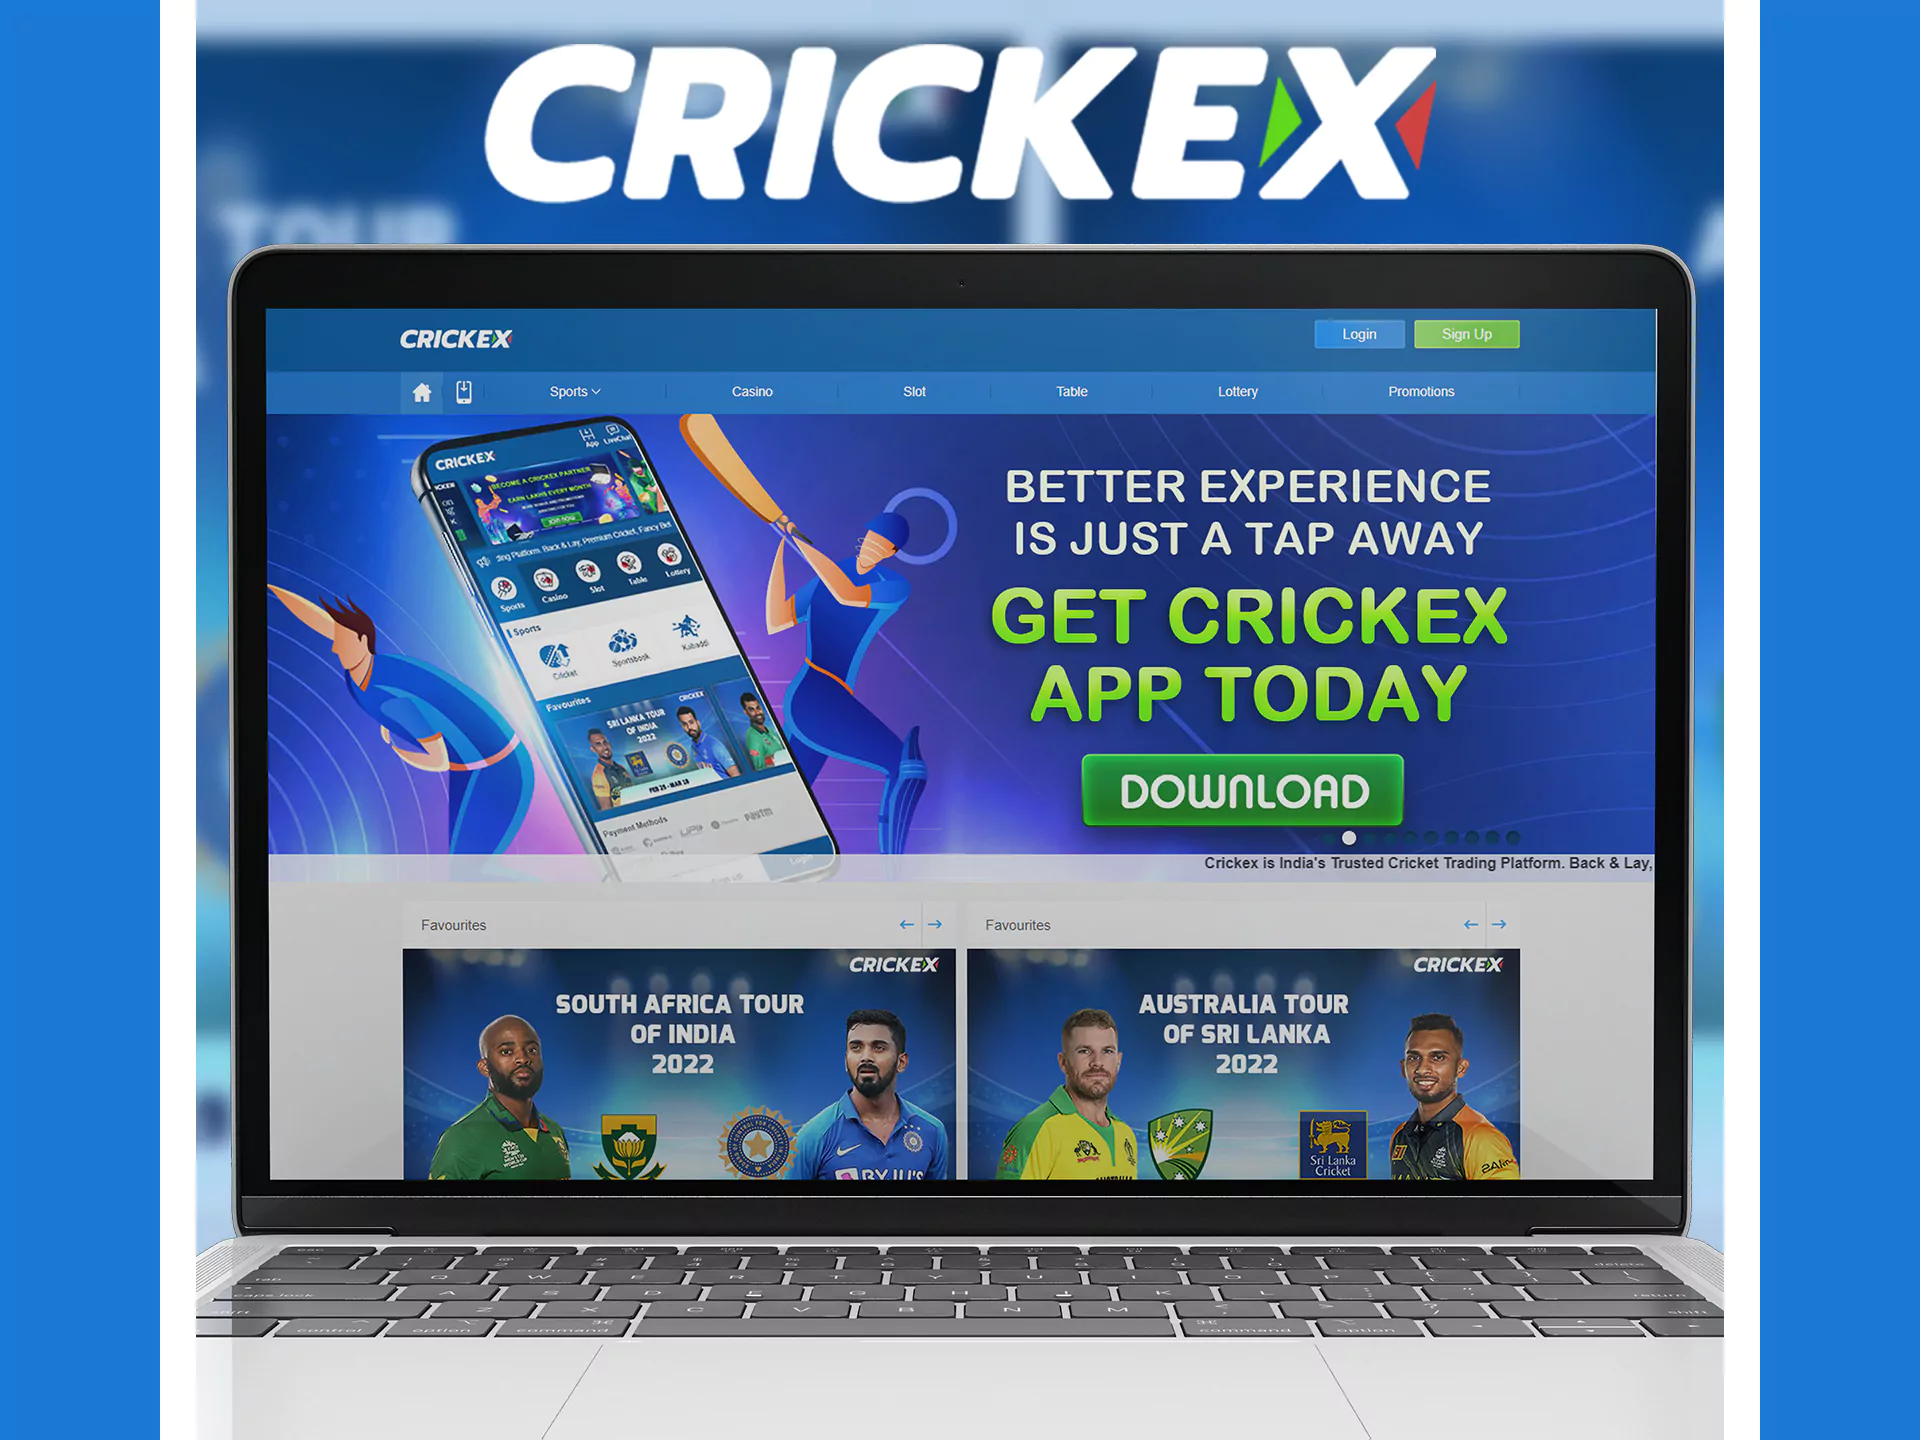 Crickex साइट का मोबाइल संस्करण ऐप के समान है।